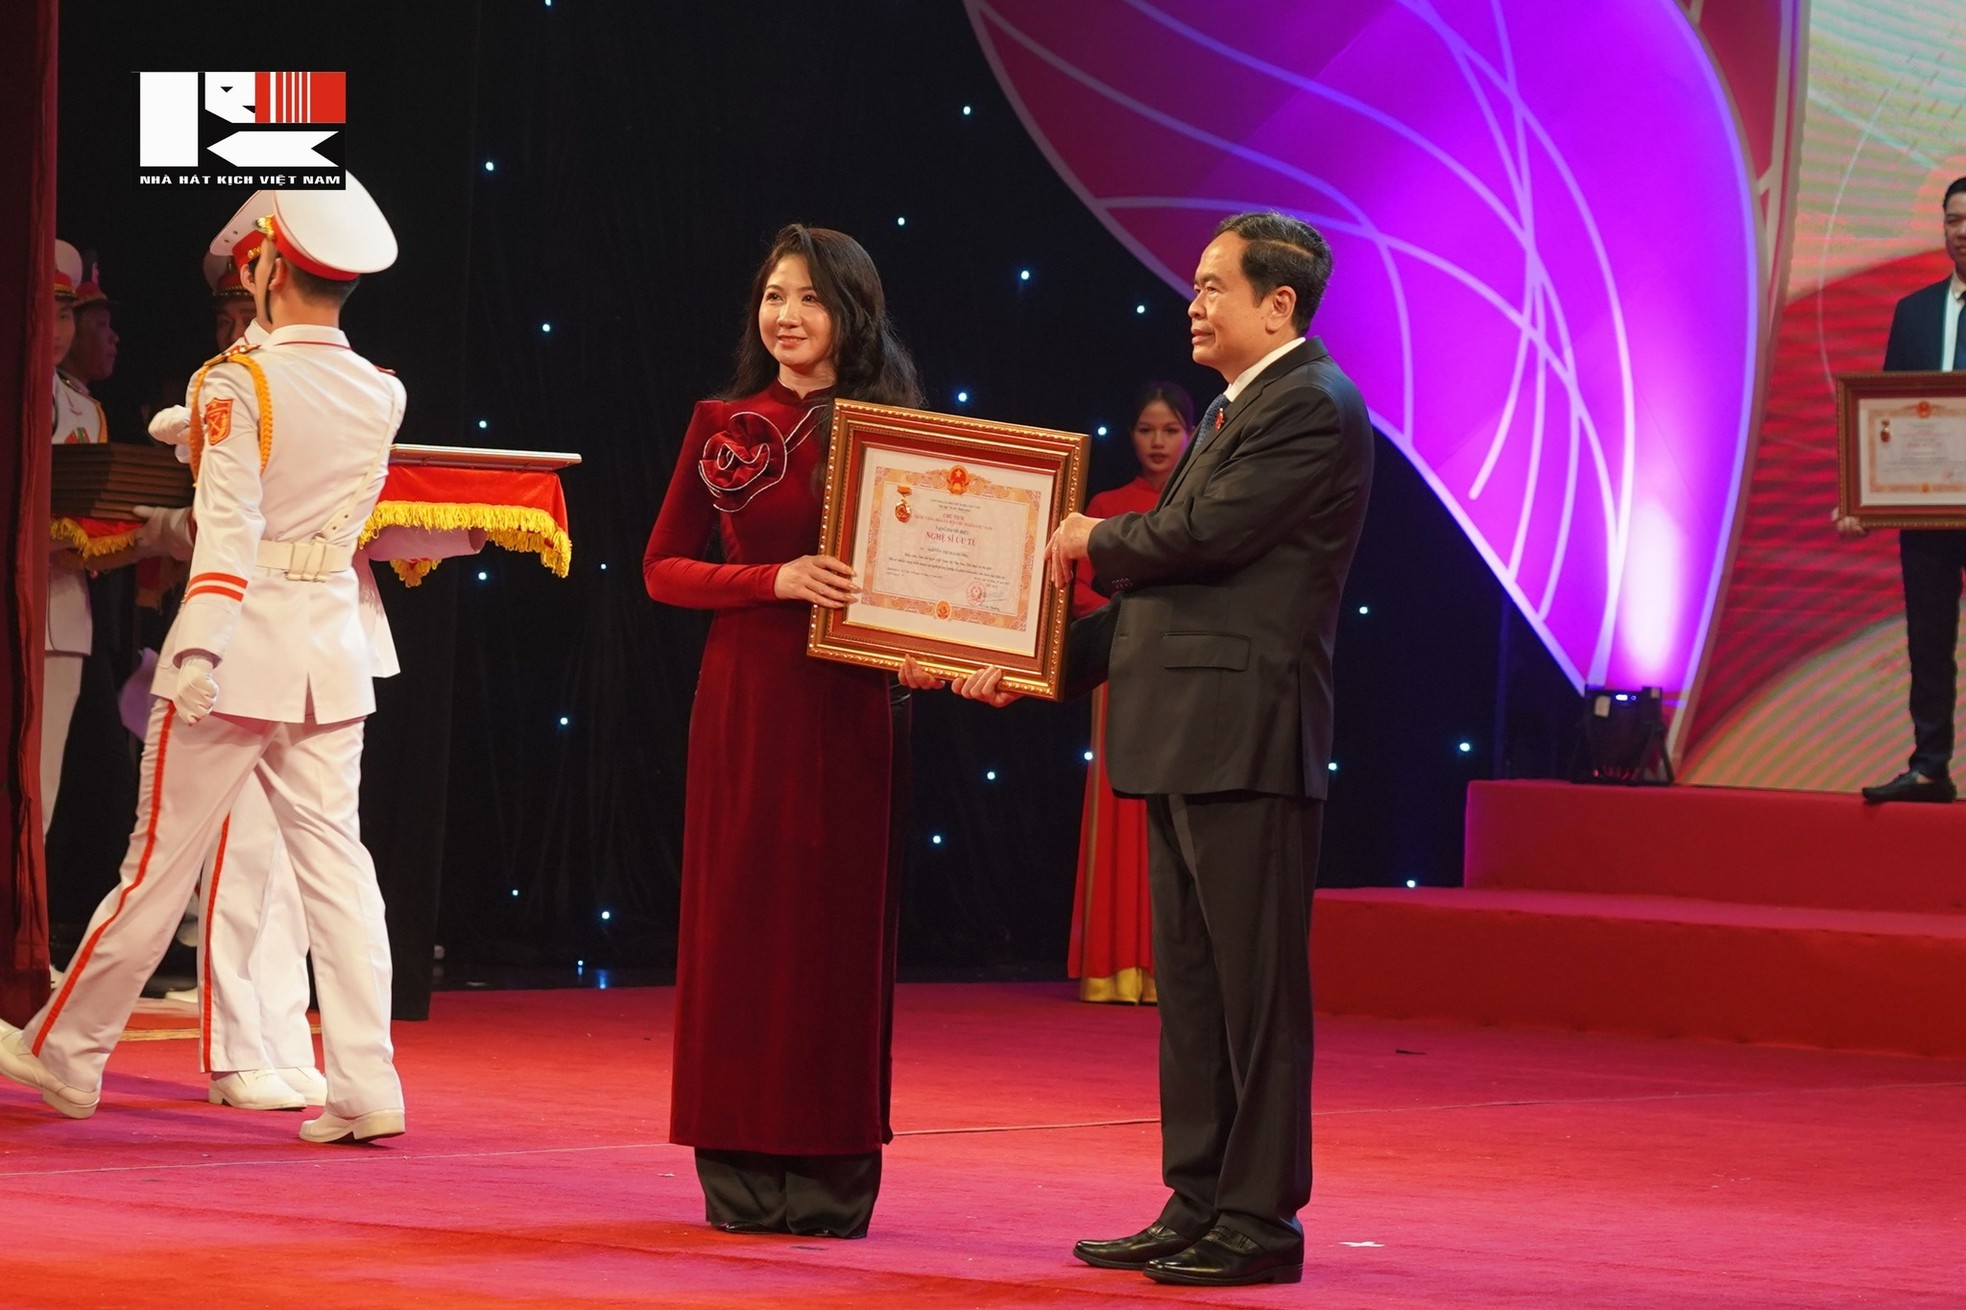 Bốn nghệ sĩ nhận danh hiệu NSND của Nhà hát Kịch Việt Nam ảnh 8